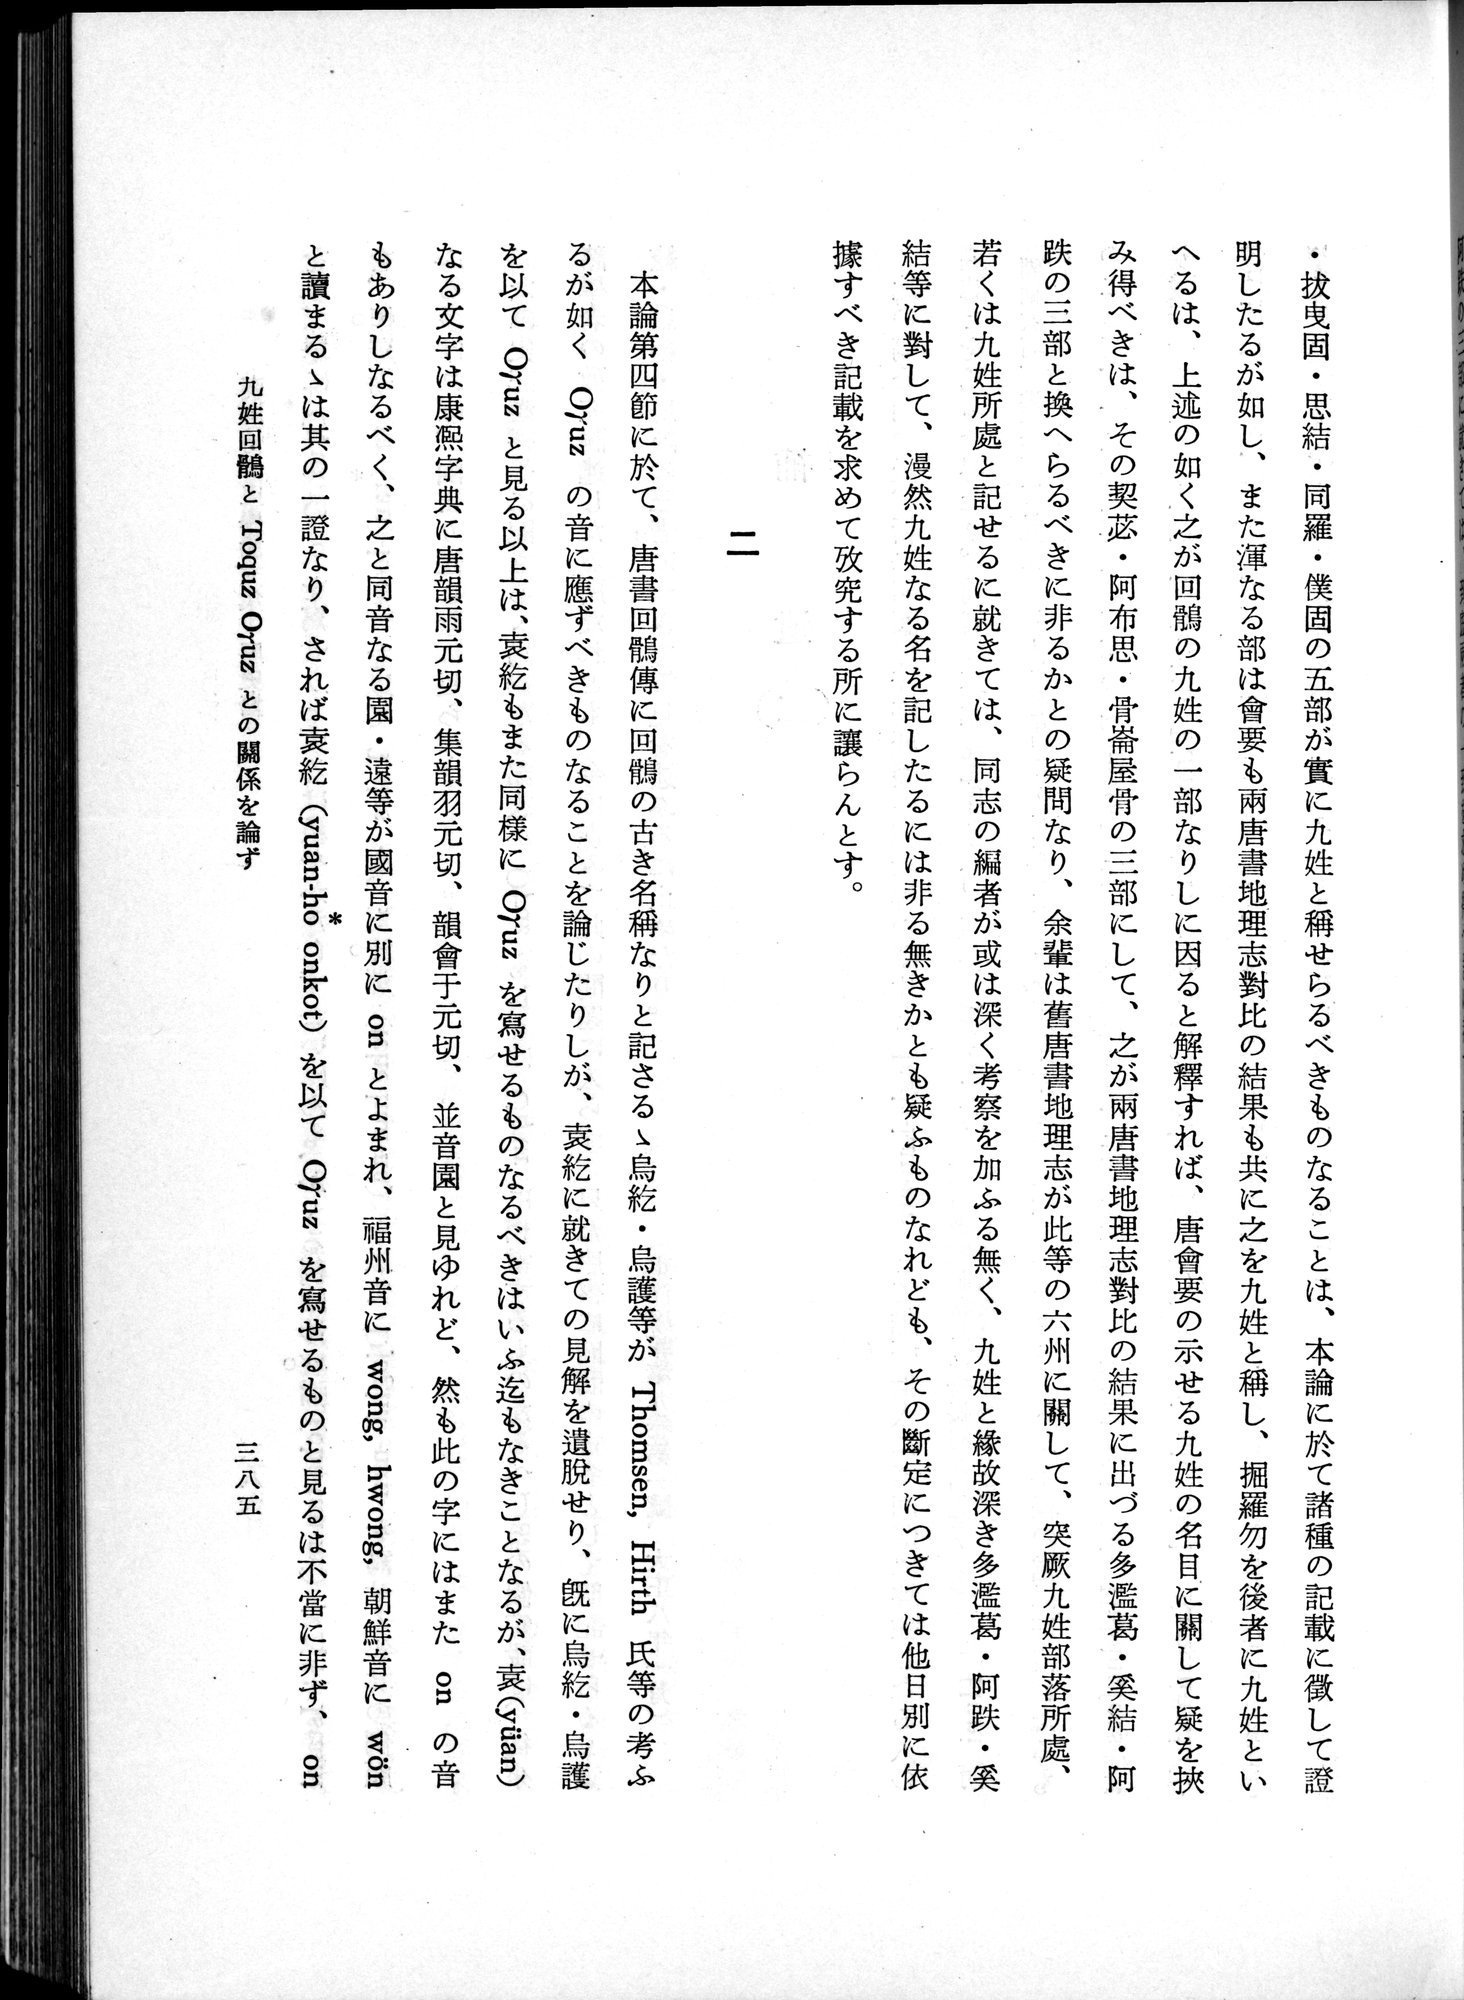 羽田博士史学論文集 : vol.1 / Page 423 (Grayscale High Resolution Image)